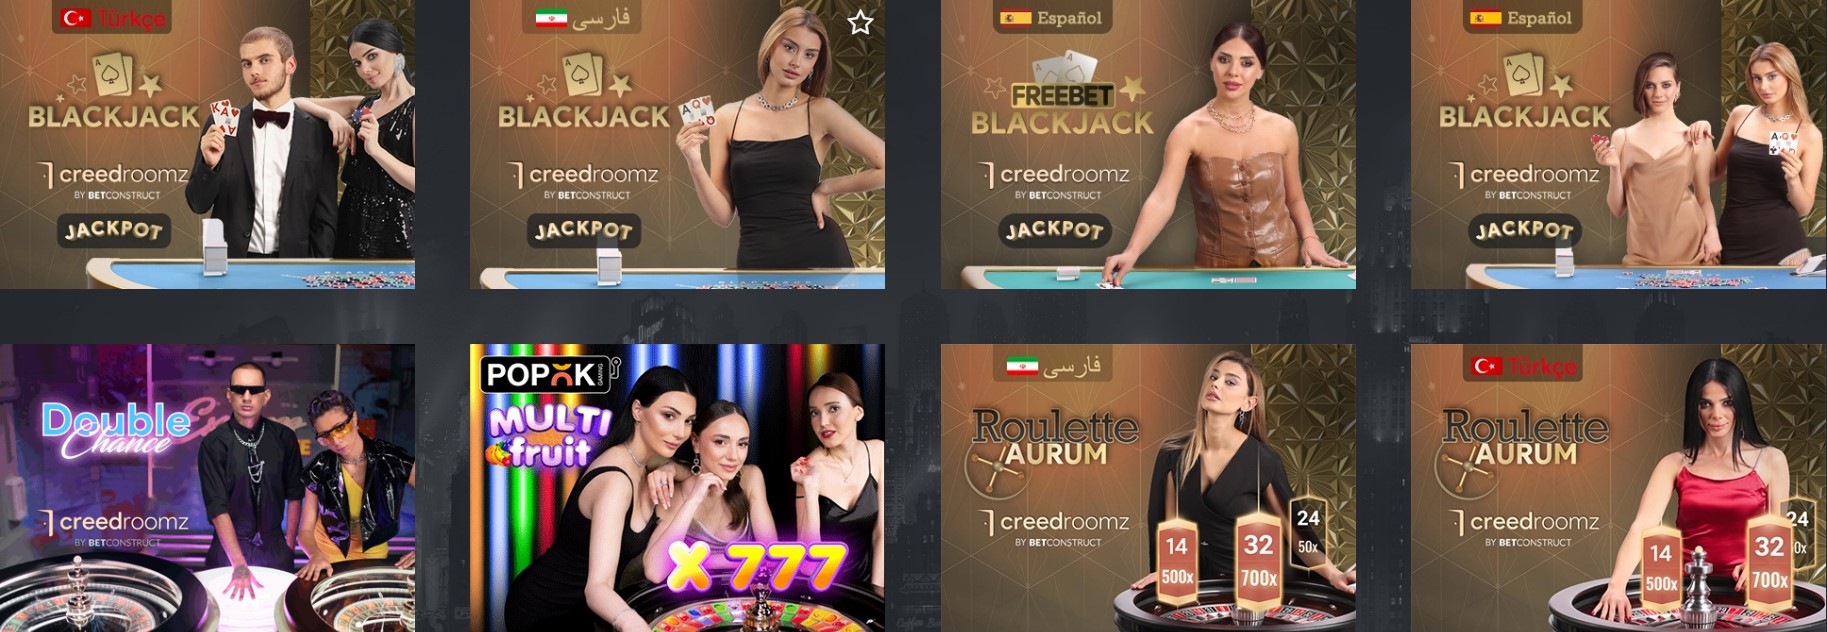 Renderbet Blackjack